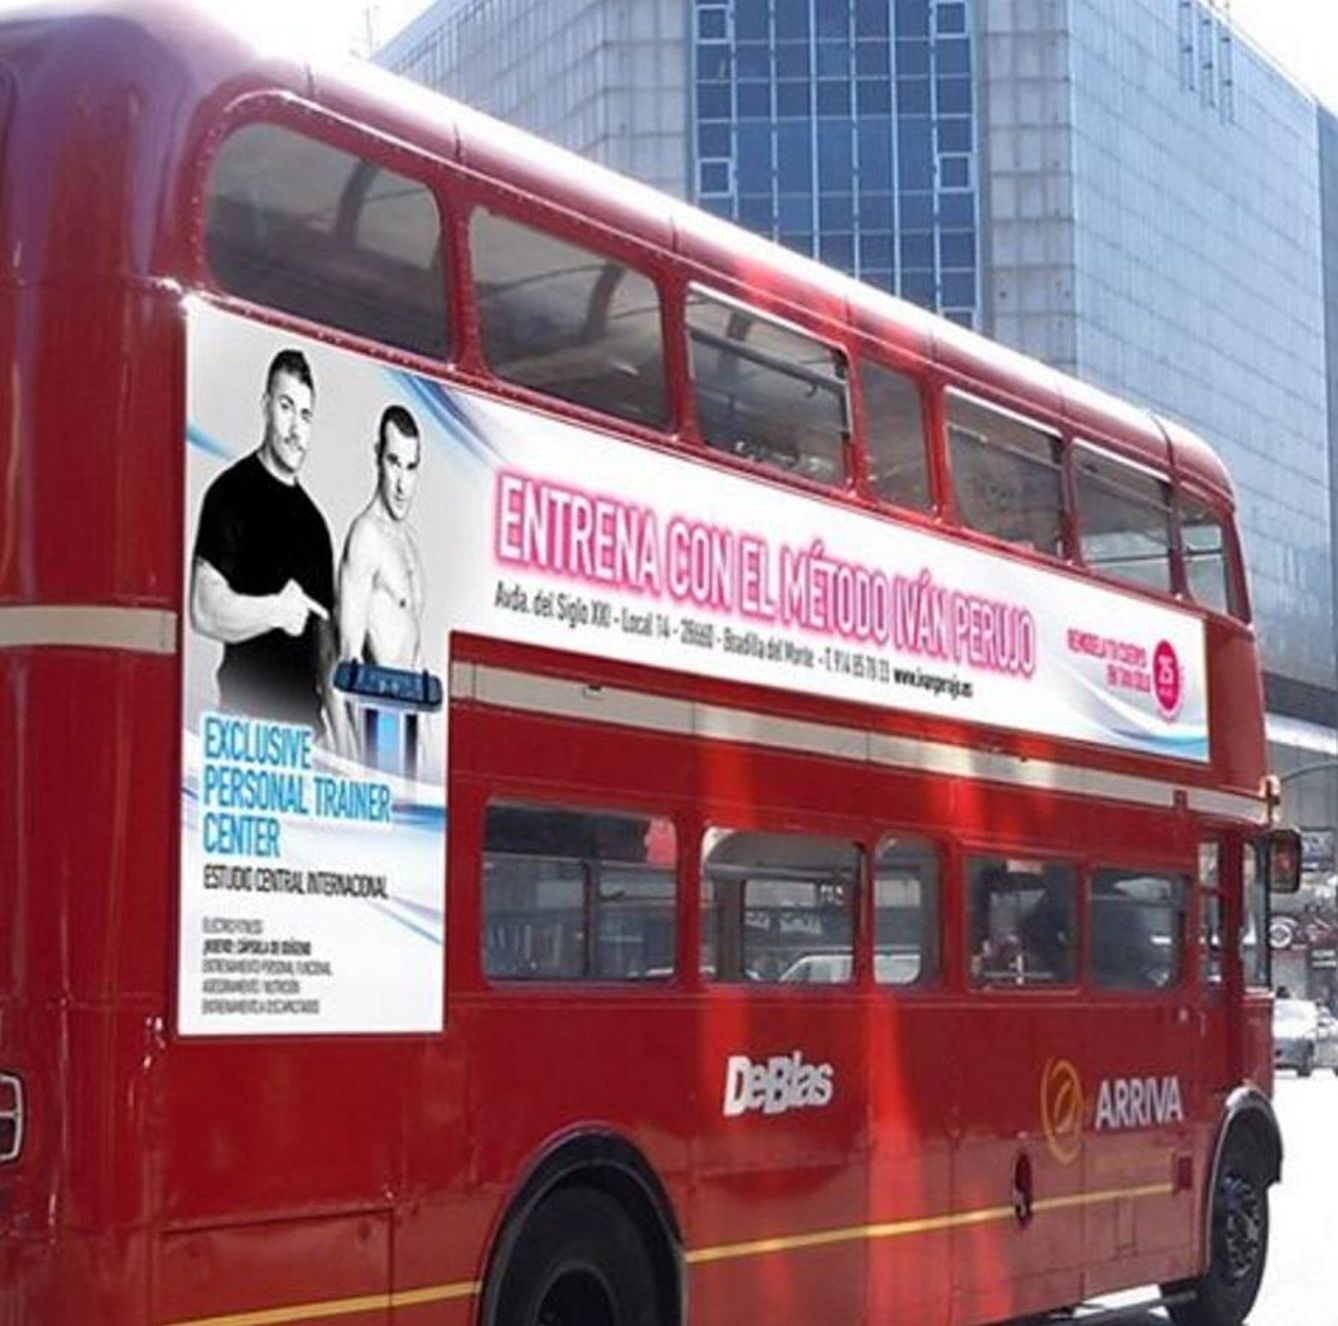 Autobús con el anuncio publicitario